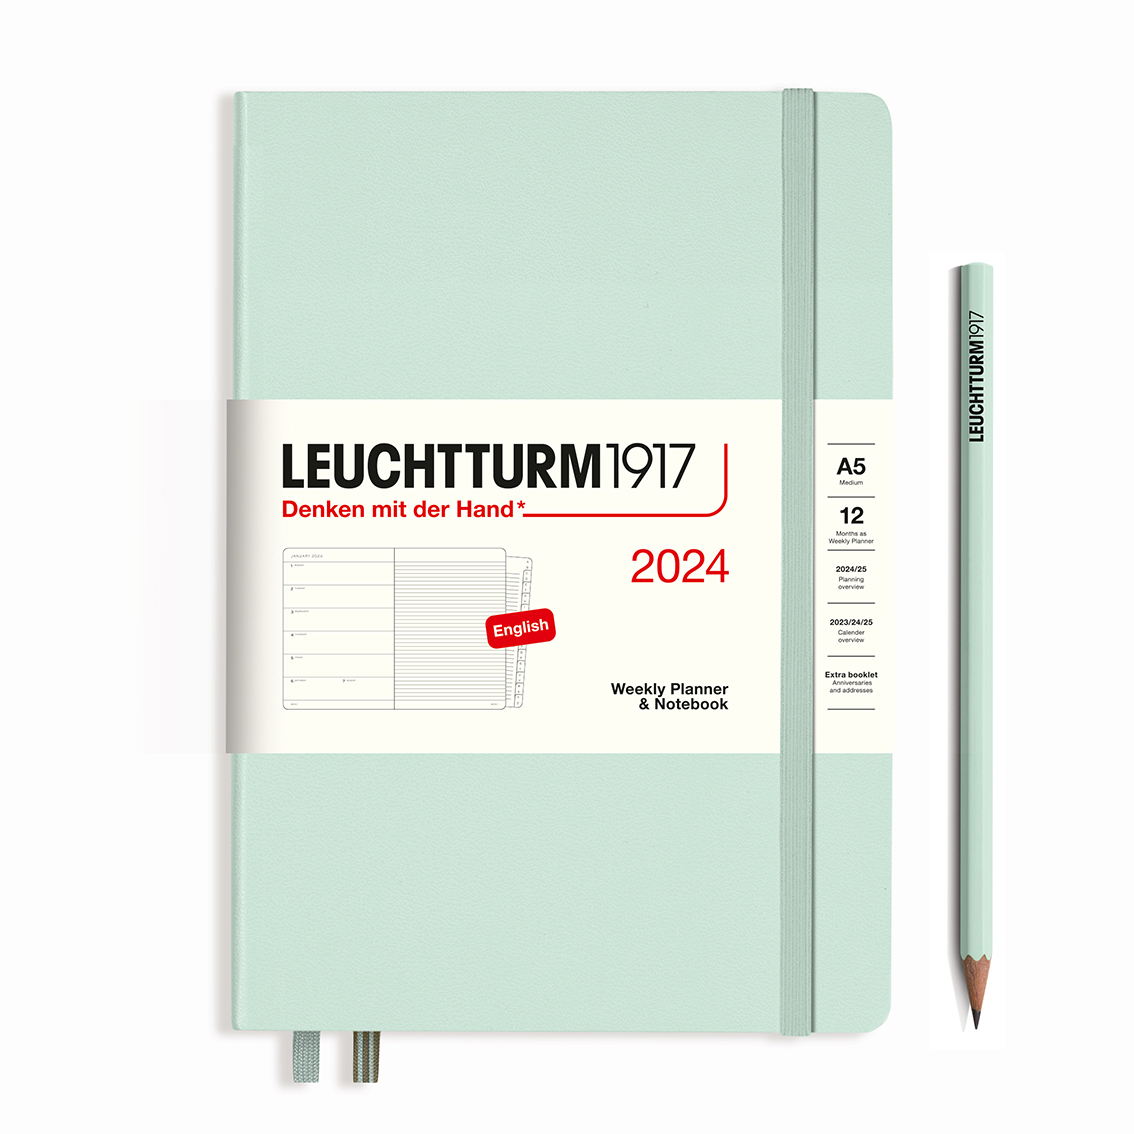 LEUCHTTURM1917 Weekly Planner & Notebook 2024 Hardcover A5 Mint Green